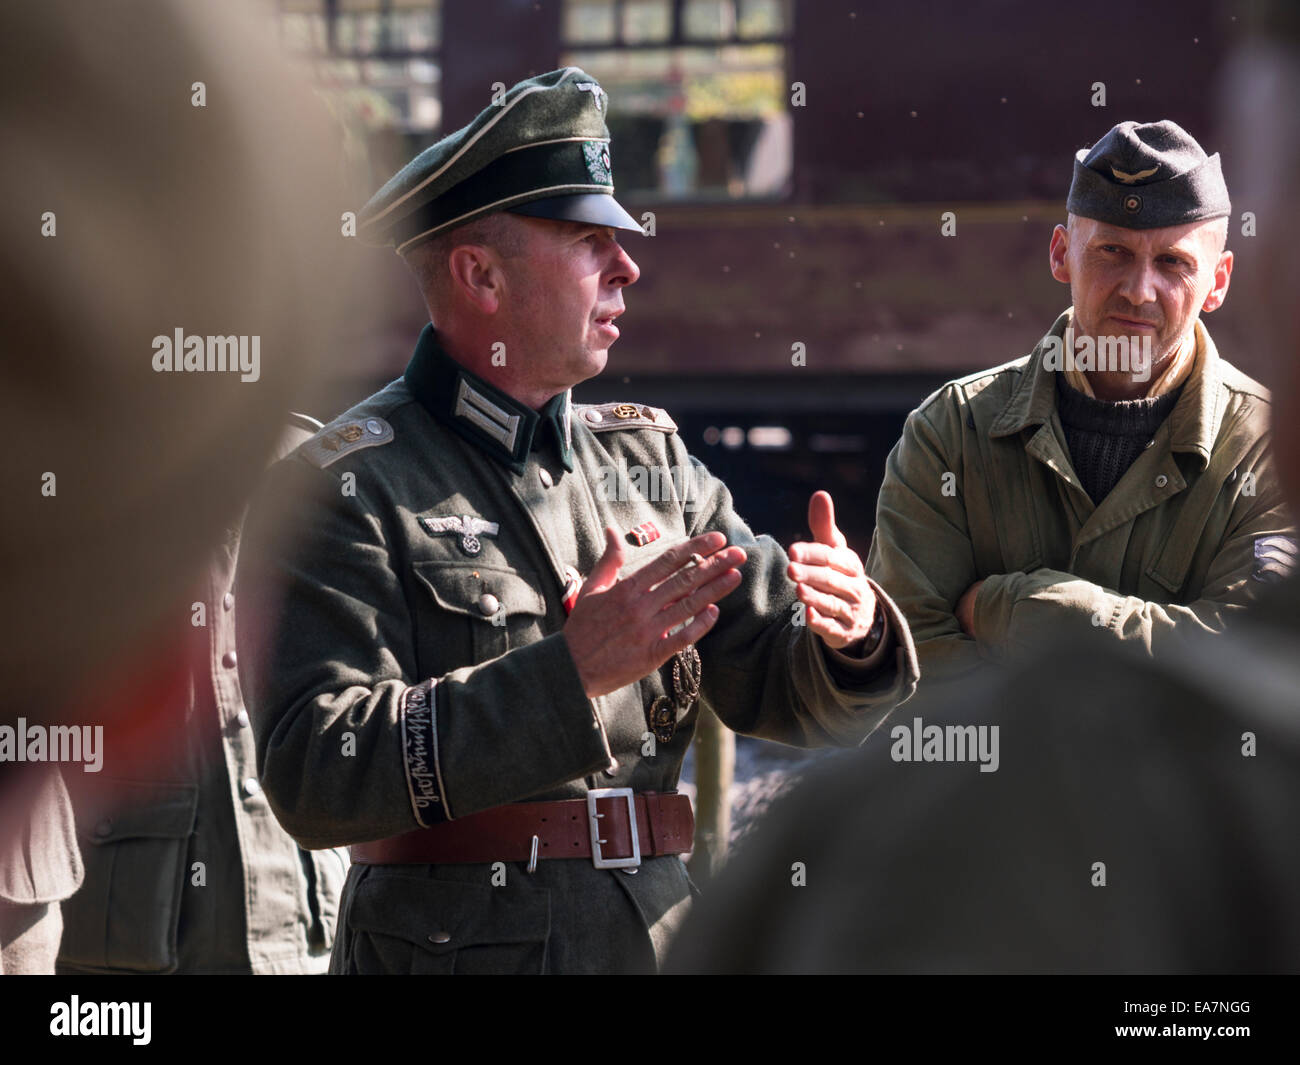 A WW11 enthusiast ri-decreta la guerra mondiale due battaglie vestito come un ufficiale tedesco, Derbyshire, Regno Unito Foto Stock